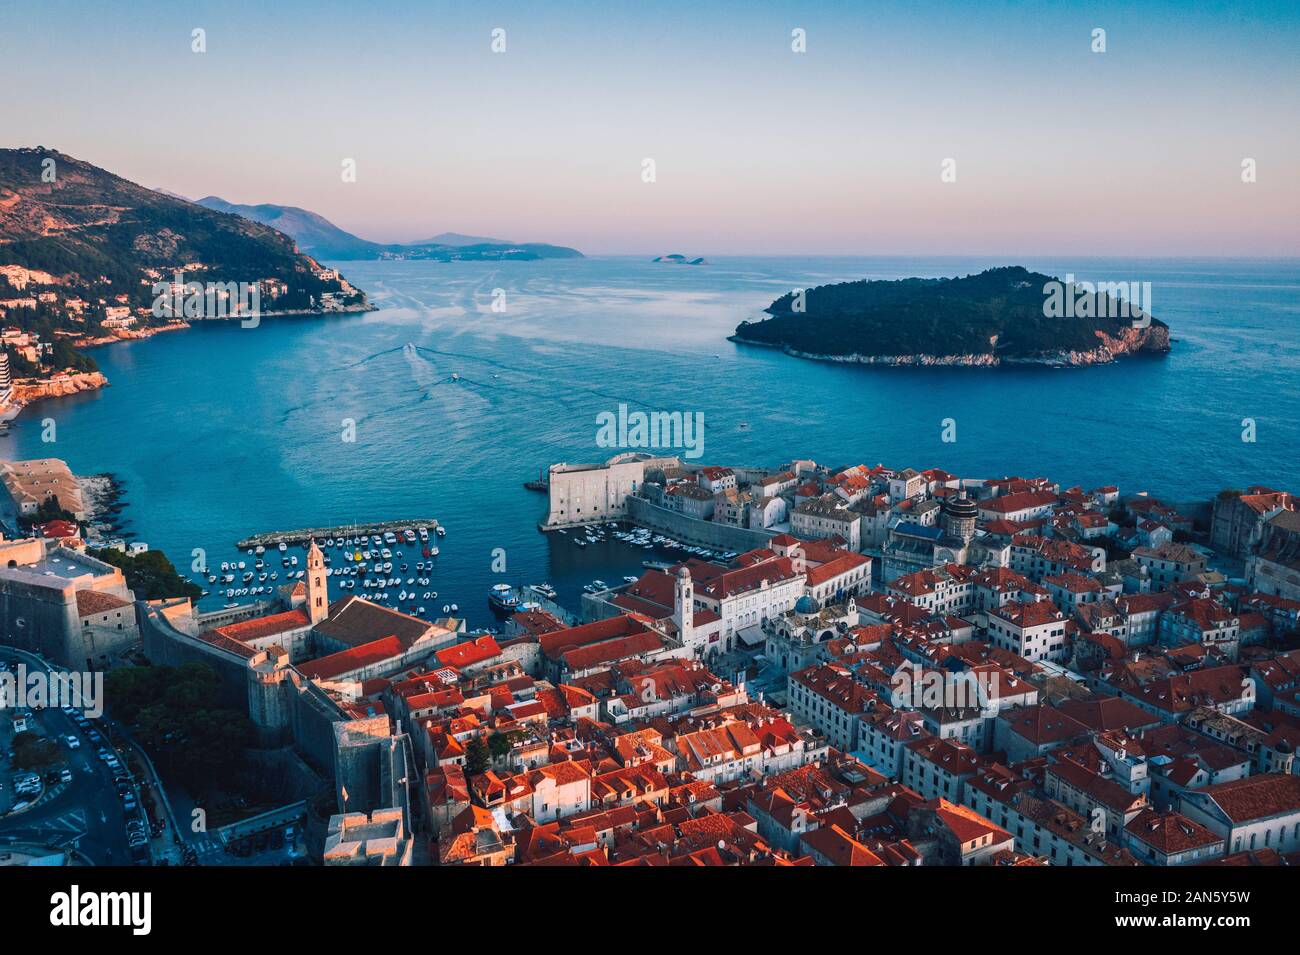 Vue aérienne sur la côte croate révélant la vieille ville de Dubrovnik et l'île de Lokrum au coucher du soleil.la vieille ville européenne et la mer Adriatique. Banque D'Images